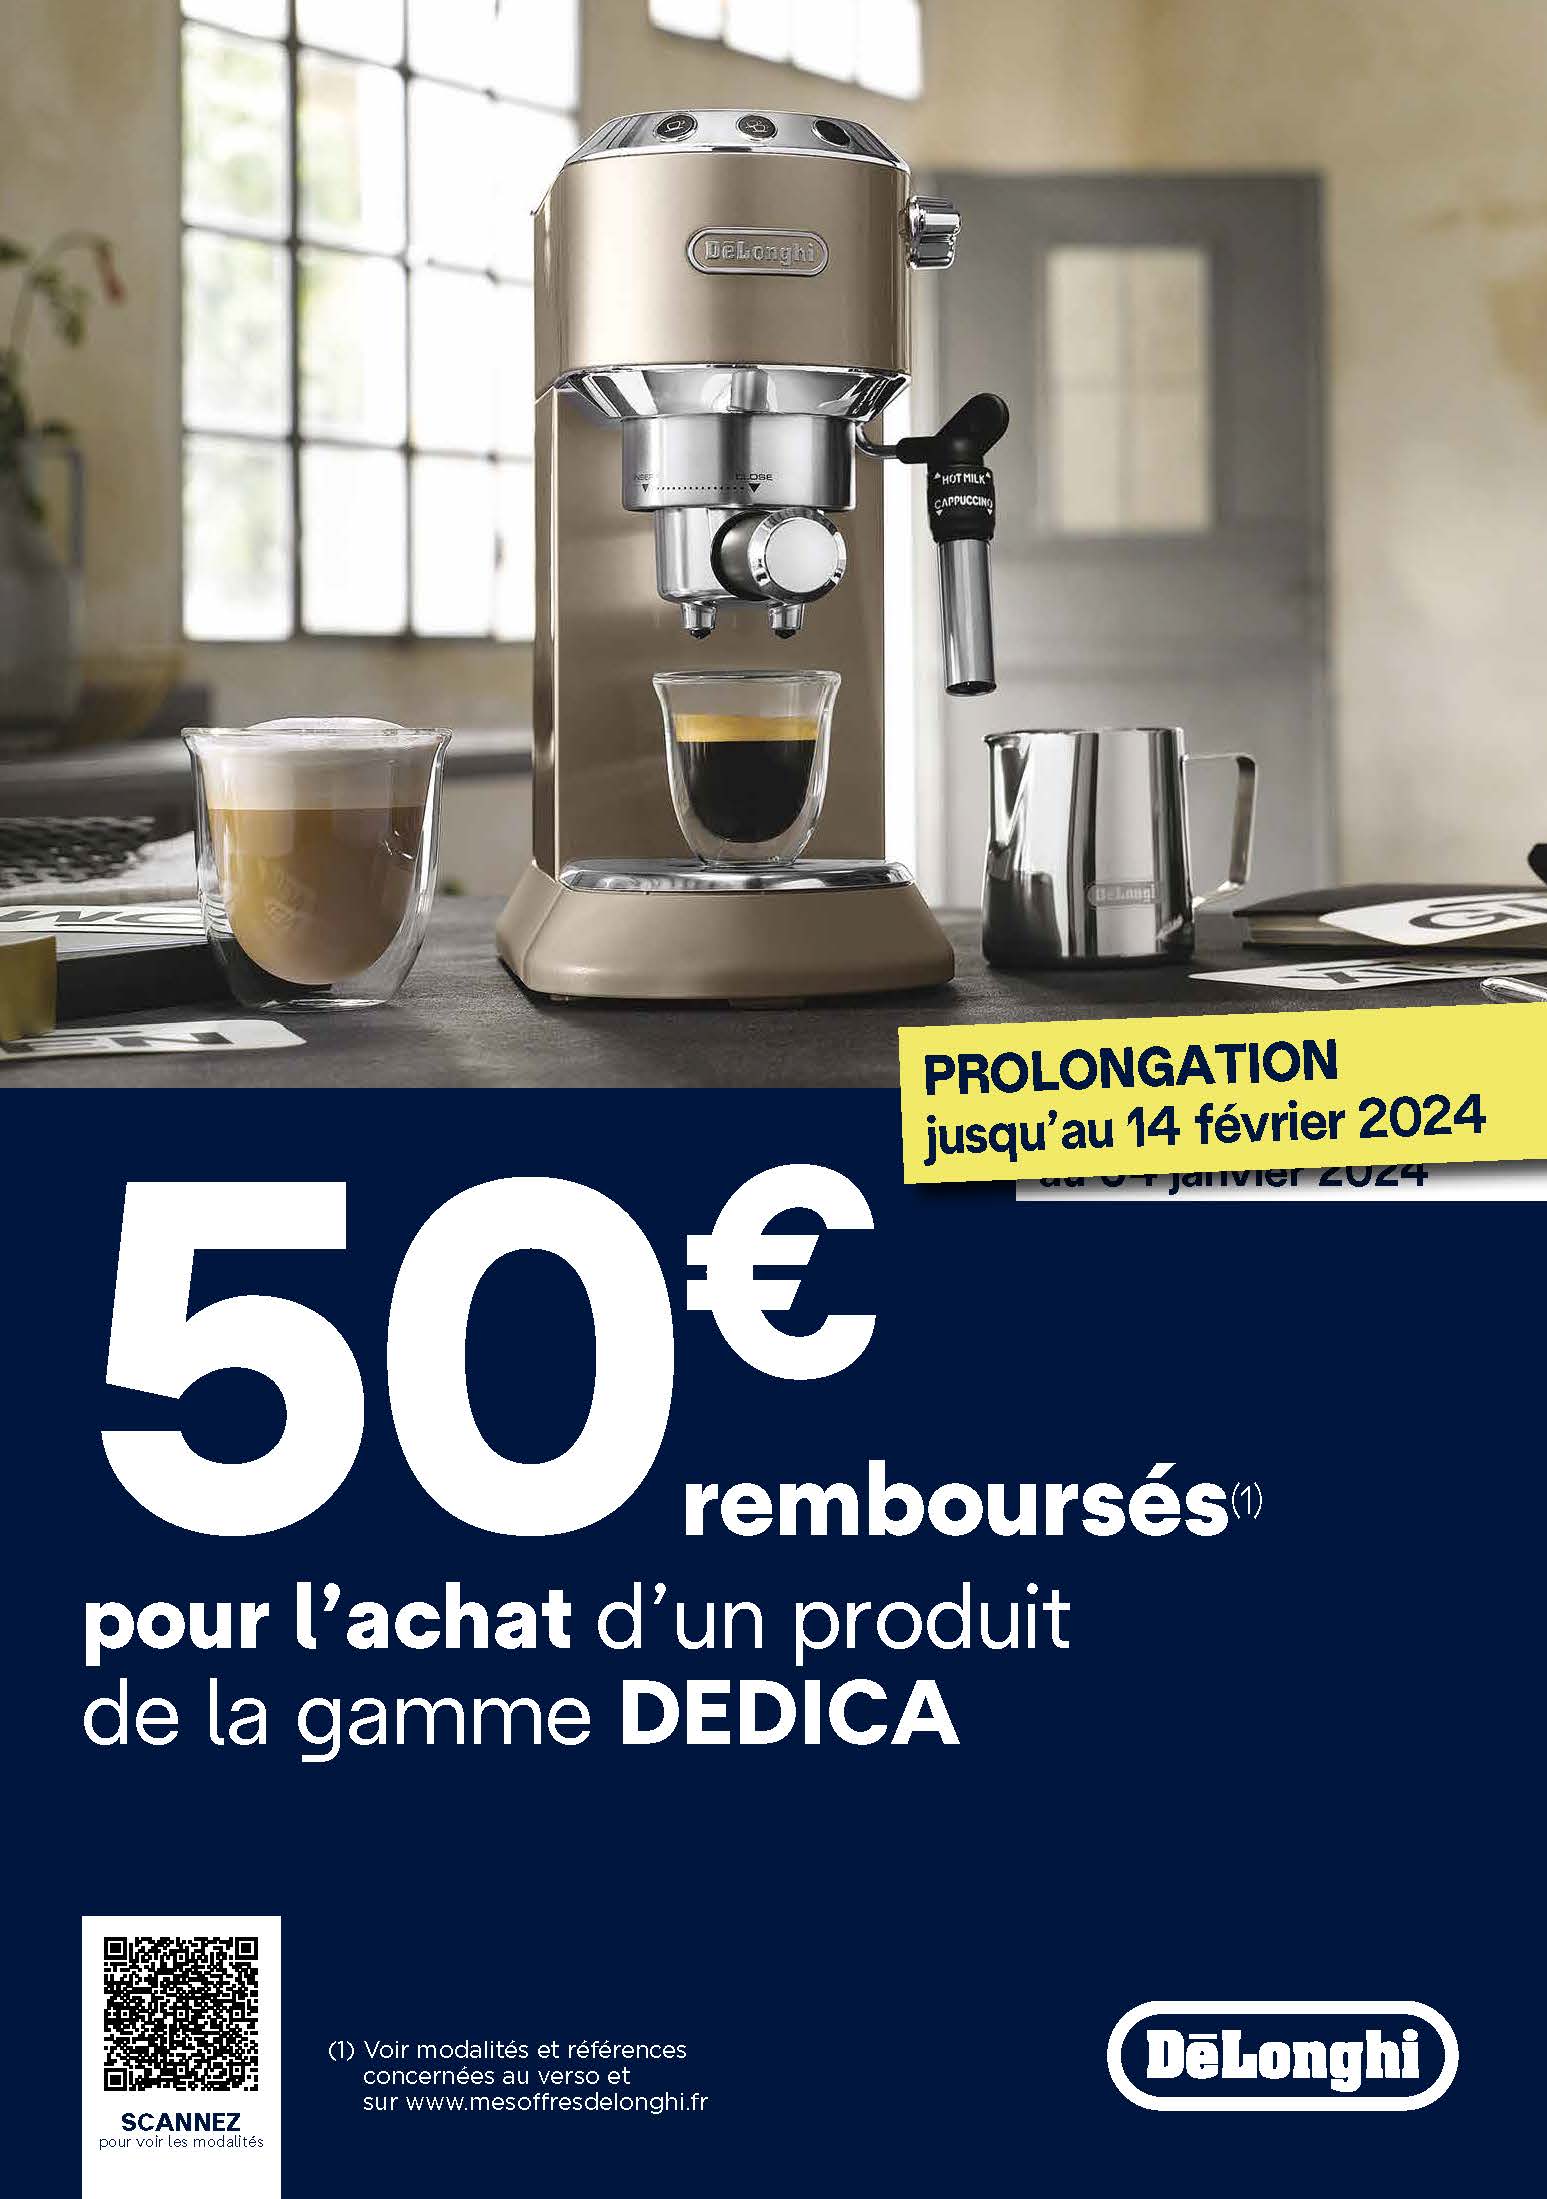 Une réduction de 111 euros sur cette machine à café Delonghi ? Ce serait  dommage de s'en priver